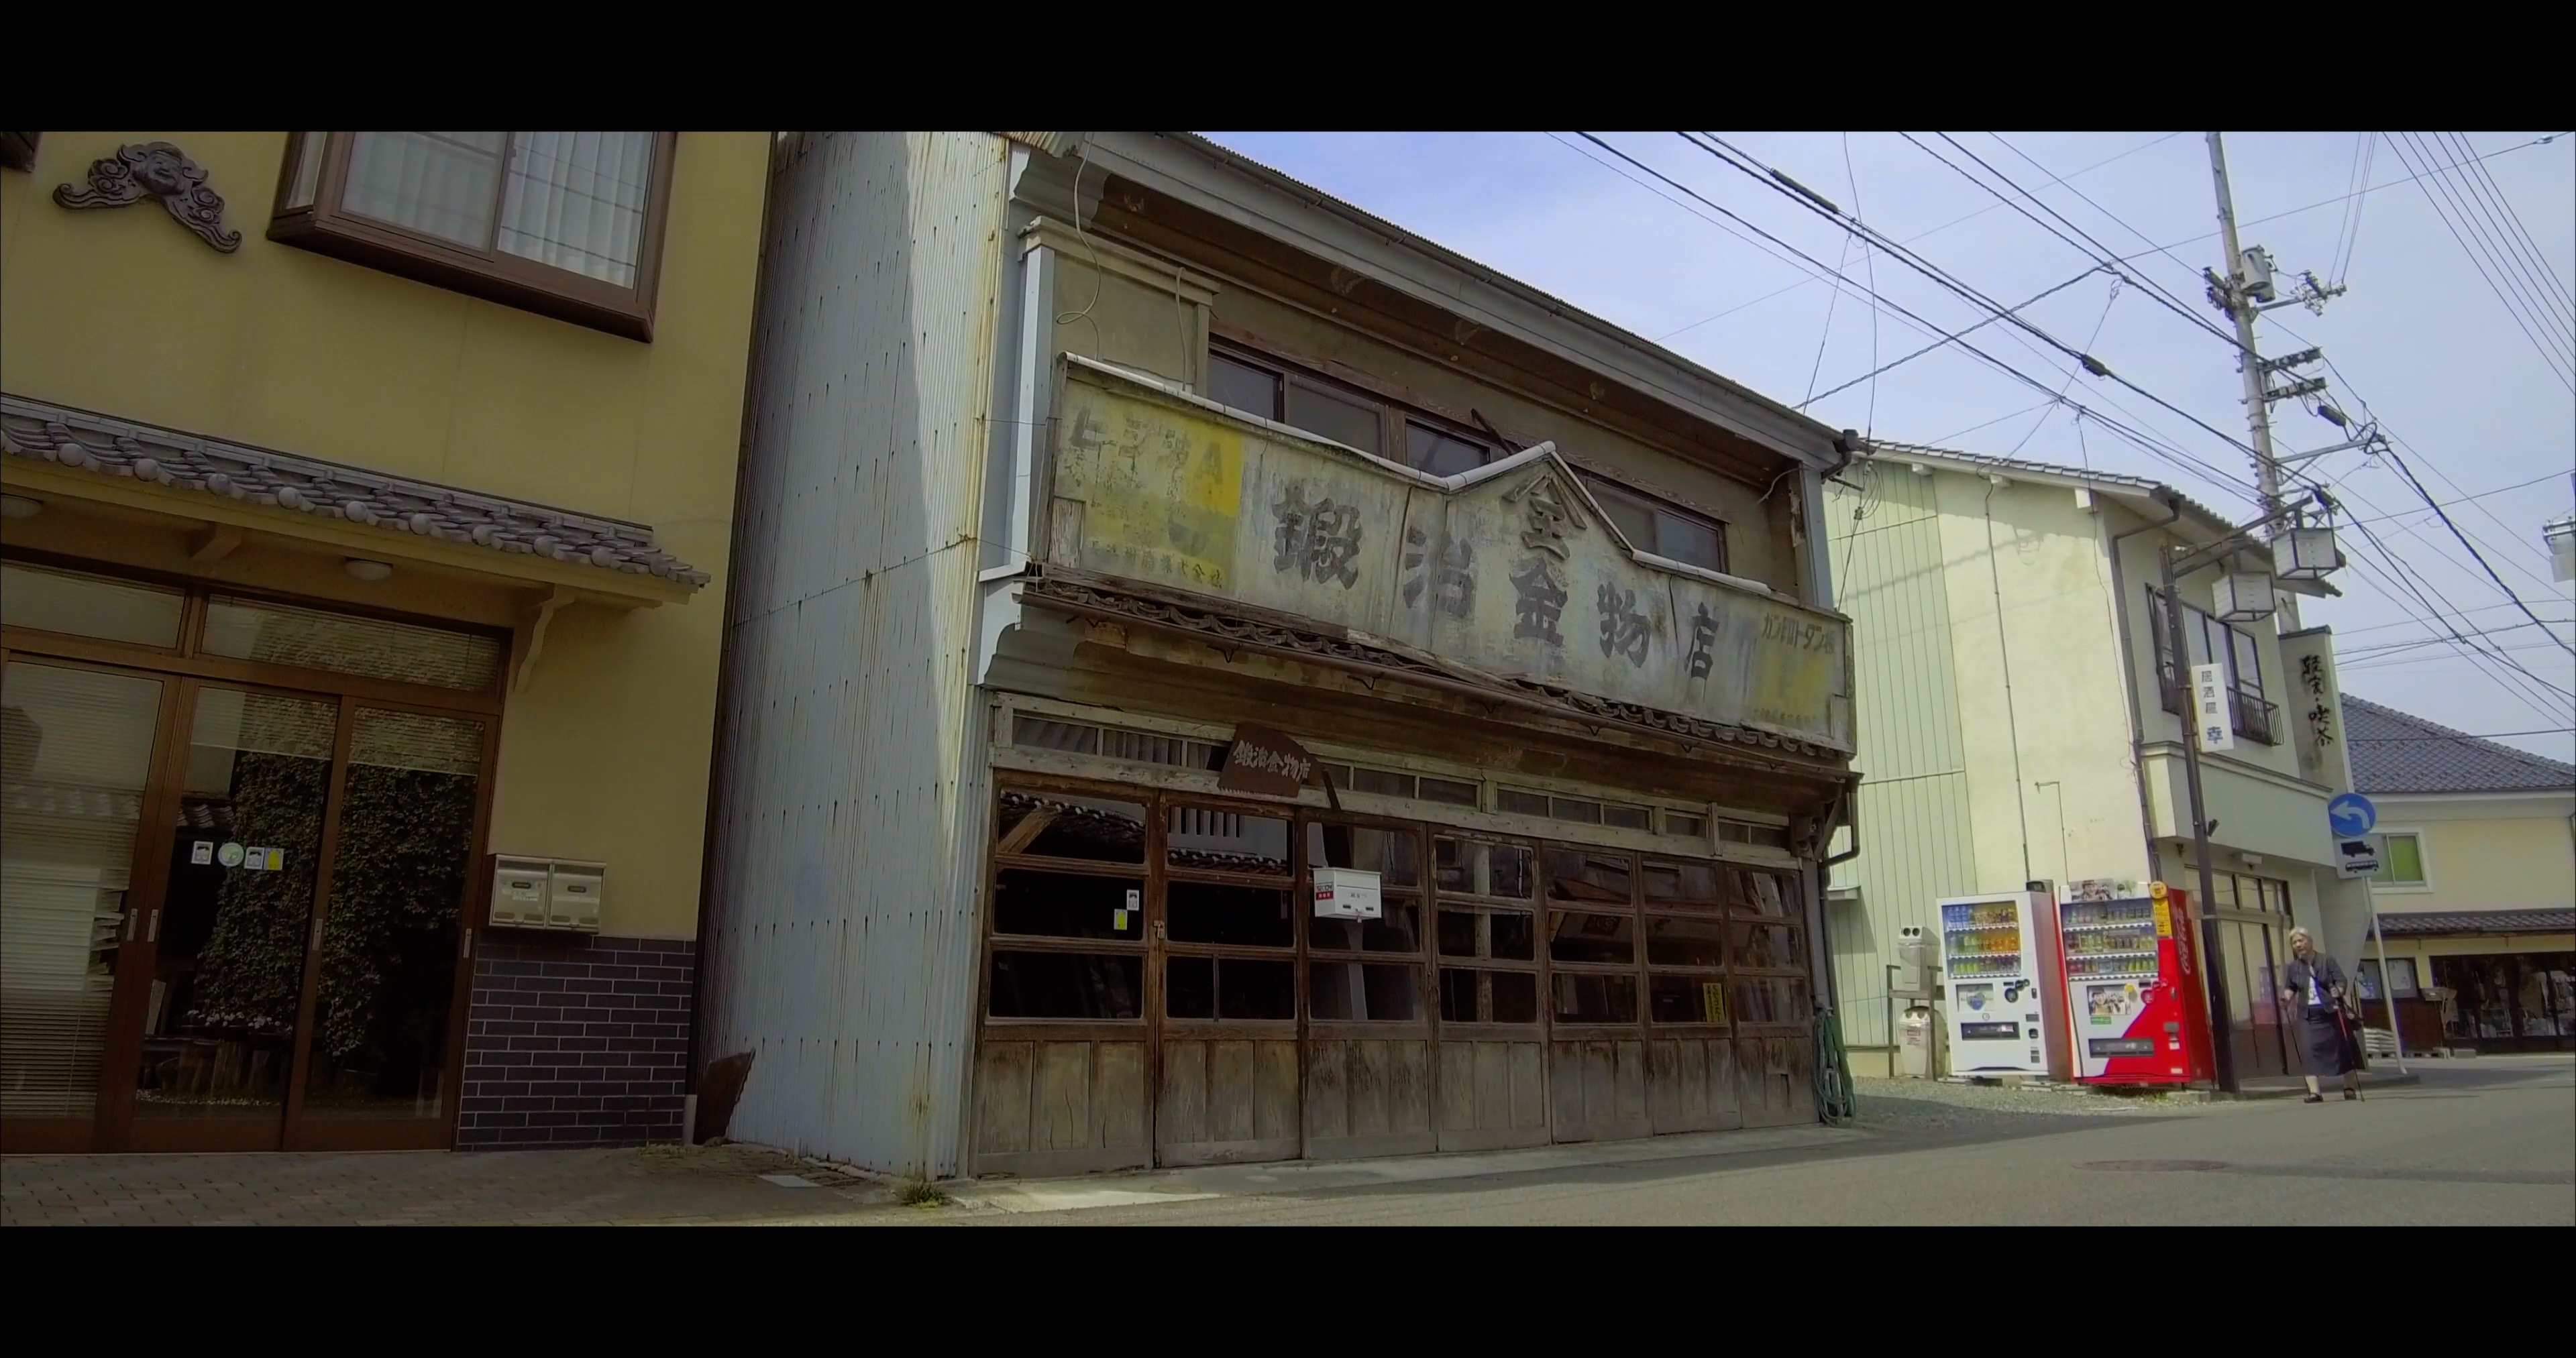 In Uchiko findet man überall alte Stadthäuser.